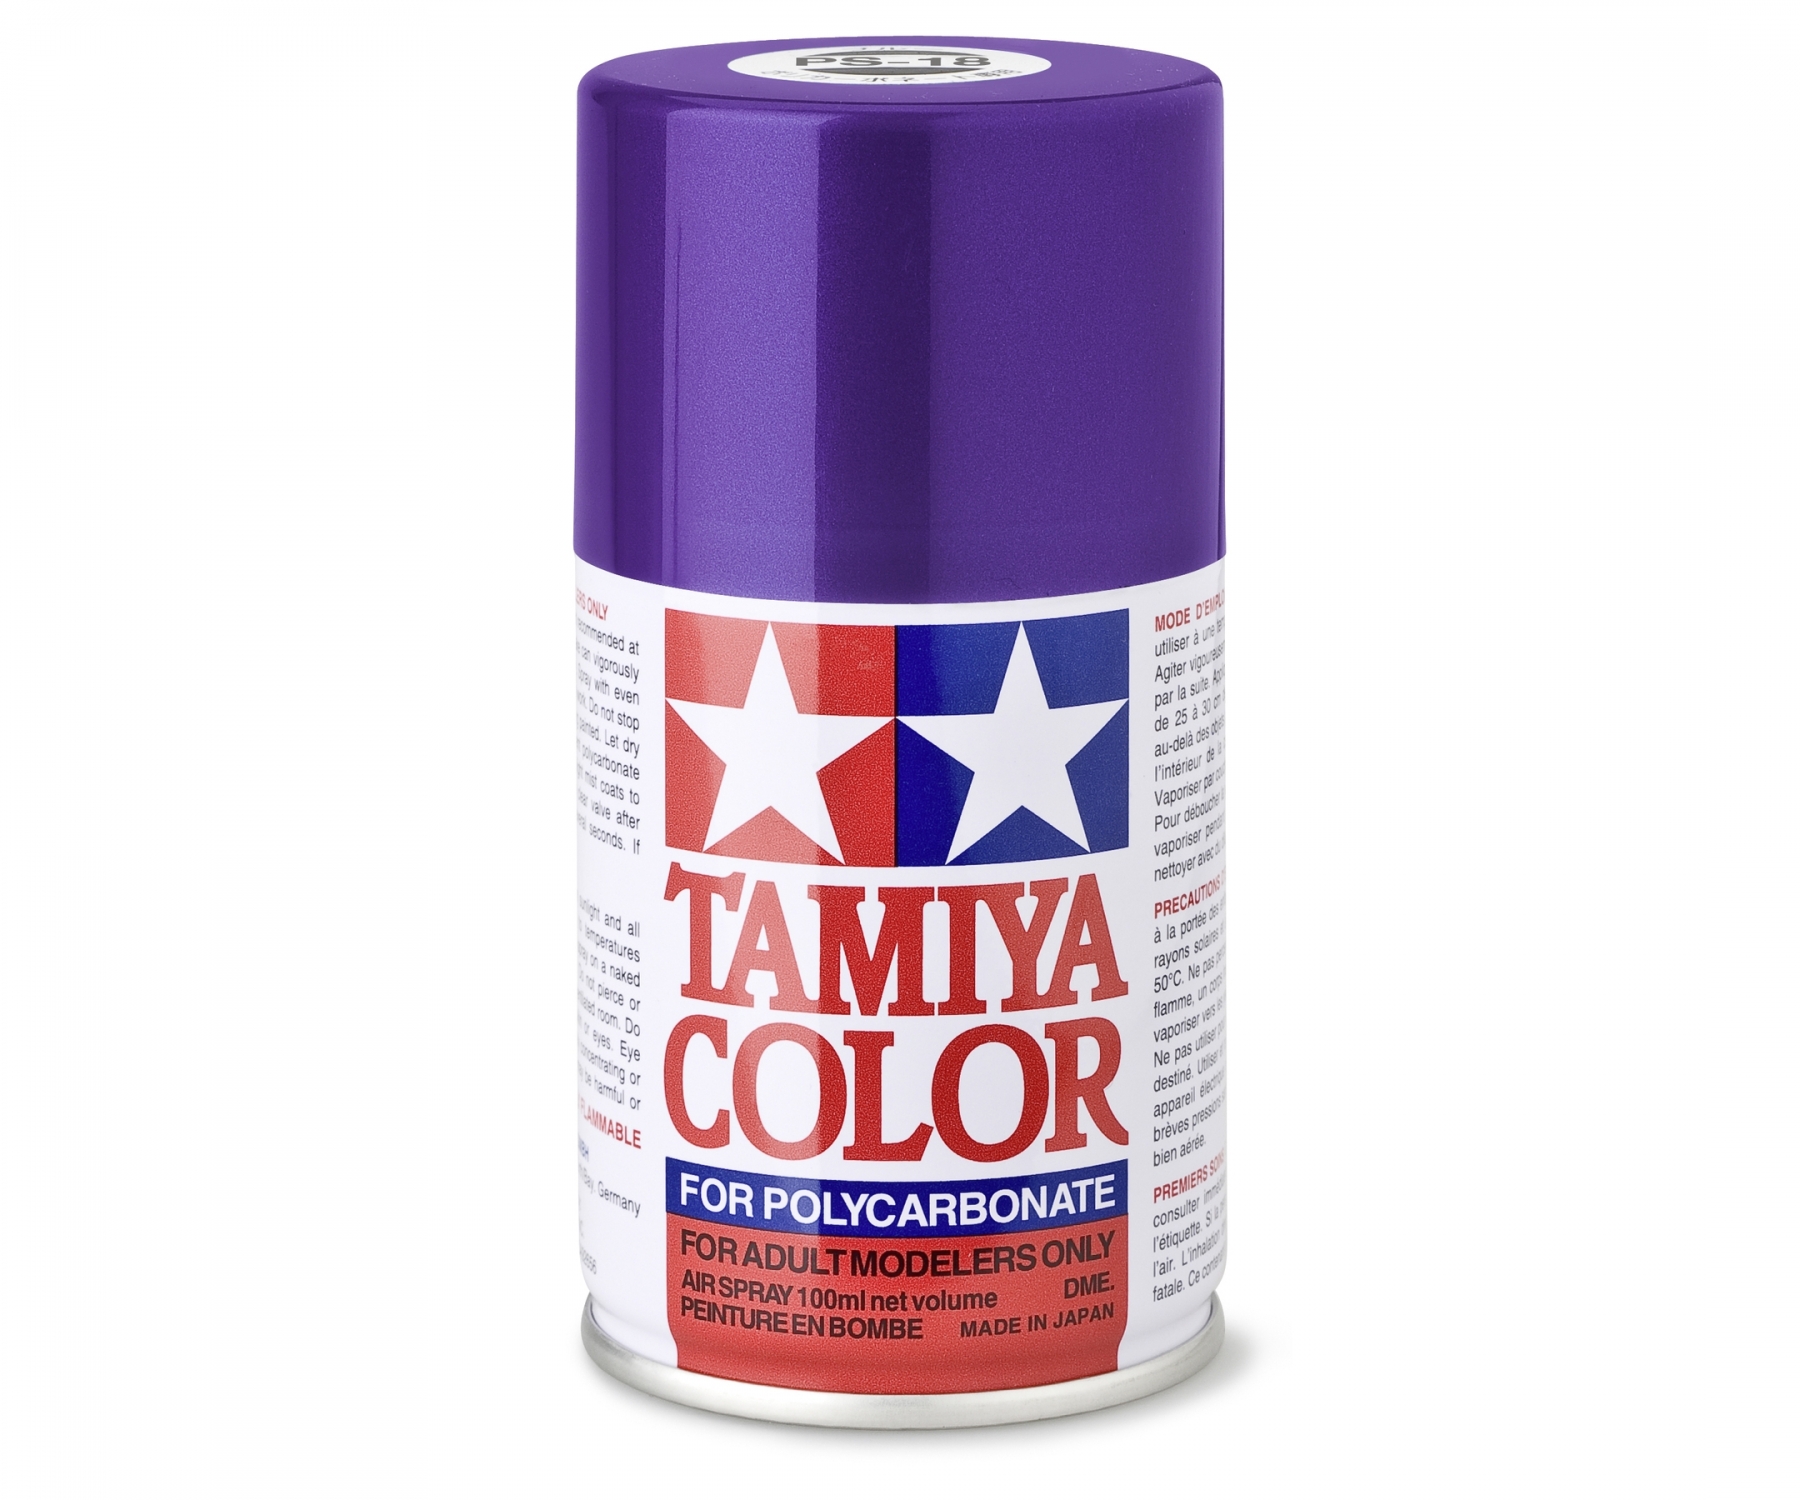 Tamiya Color Lexanspray Lila (metallic) PS-18 100 ml Spraydose (L=109,90€)